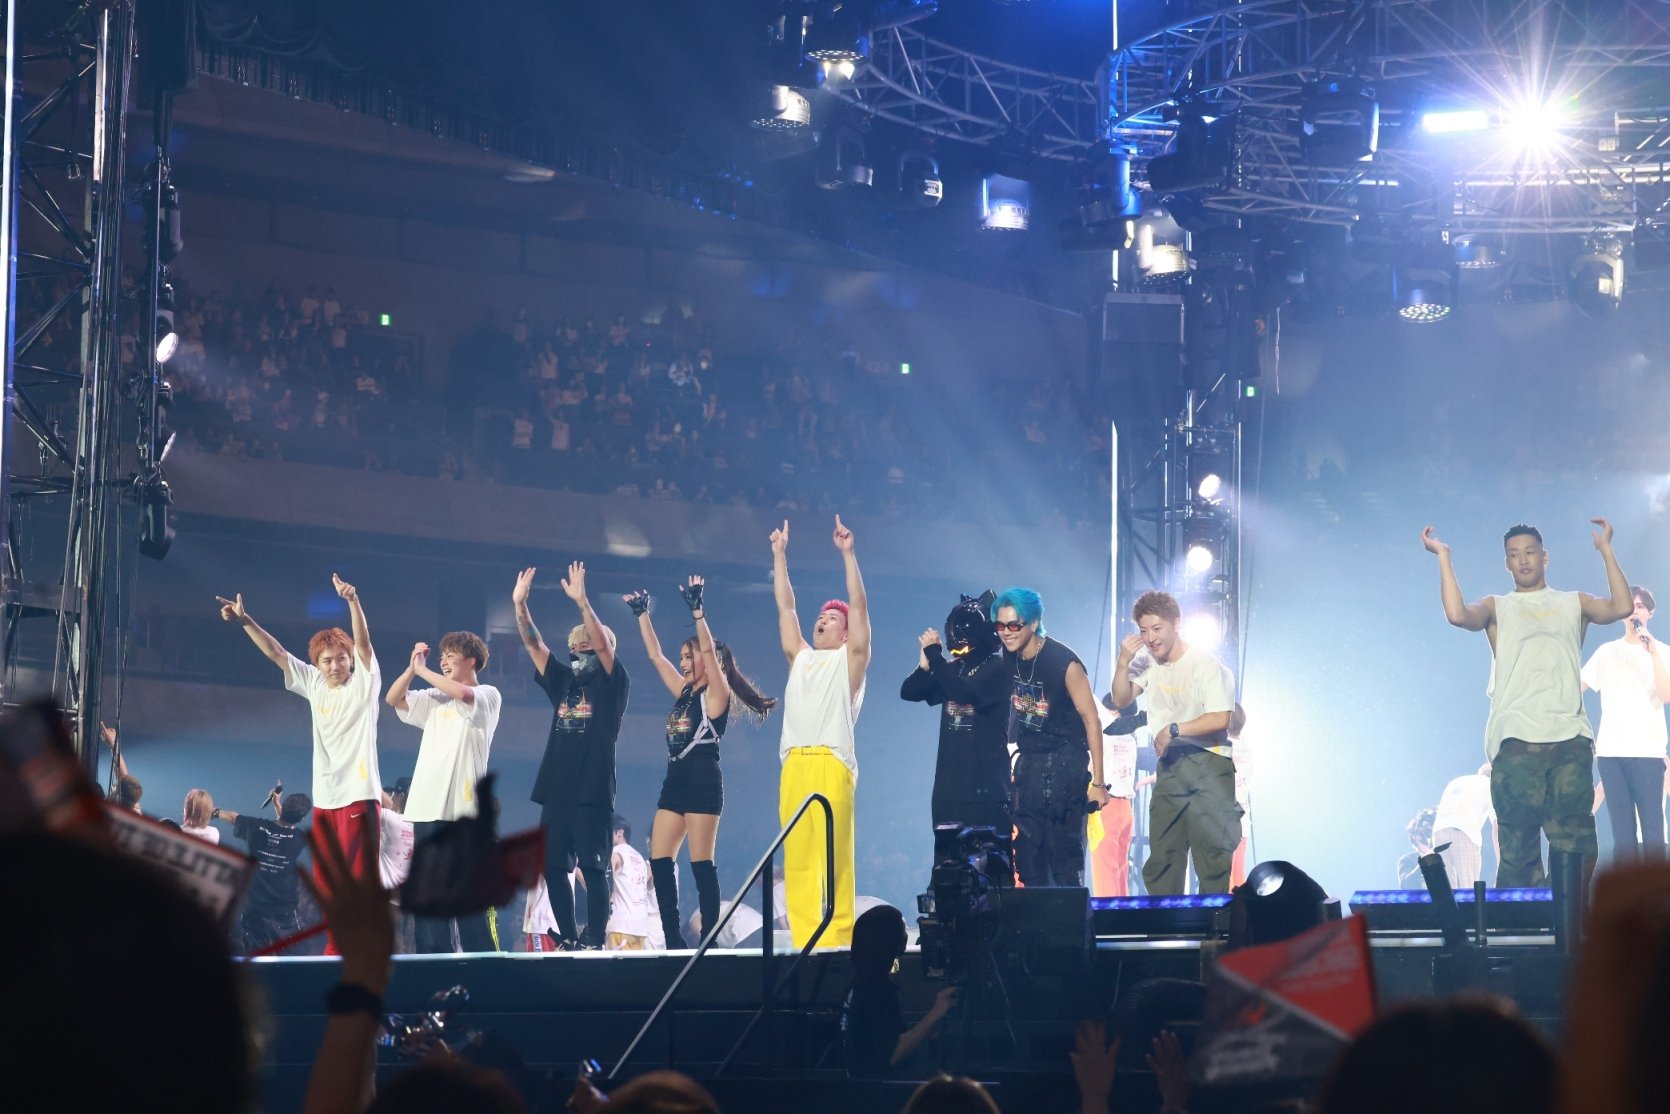 ทีมศิลปินไทยจาก High Cloud Ent. และ 4NOLOUGE จัดเต็มความมันส์ BATTLE OF TOKYO: CODE OF Jr. EXILE วันแรก ผู้ชมตอบรับประทับใจ!